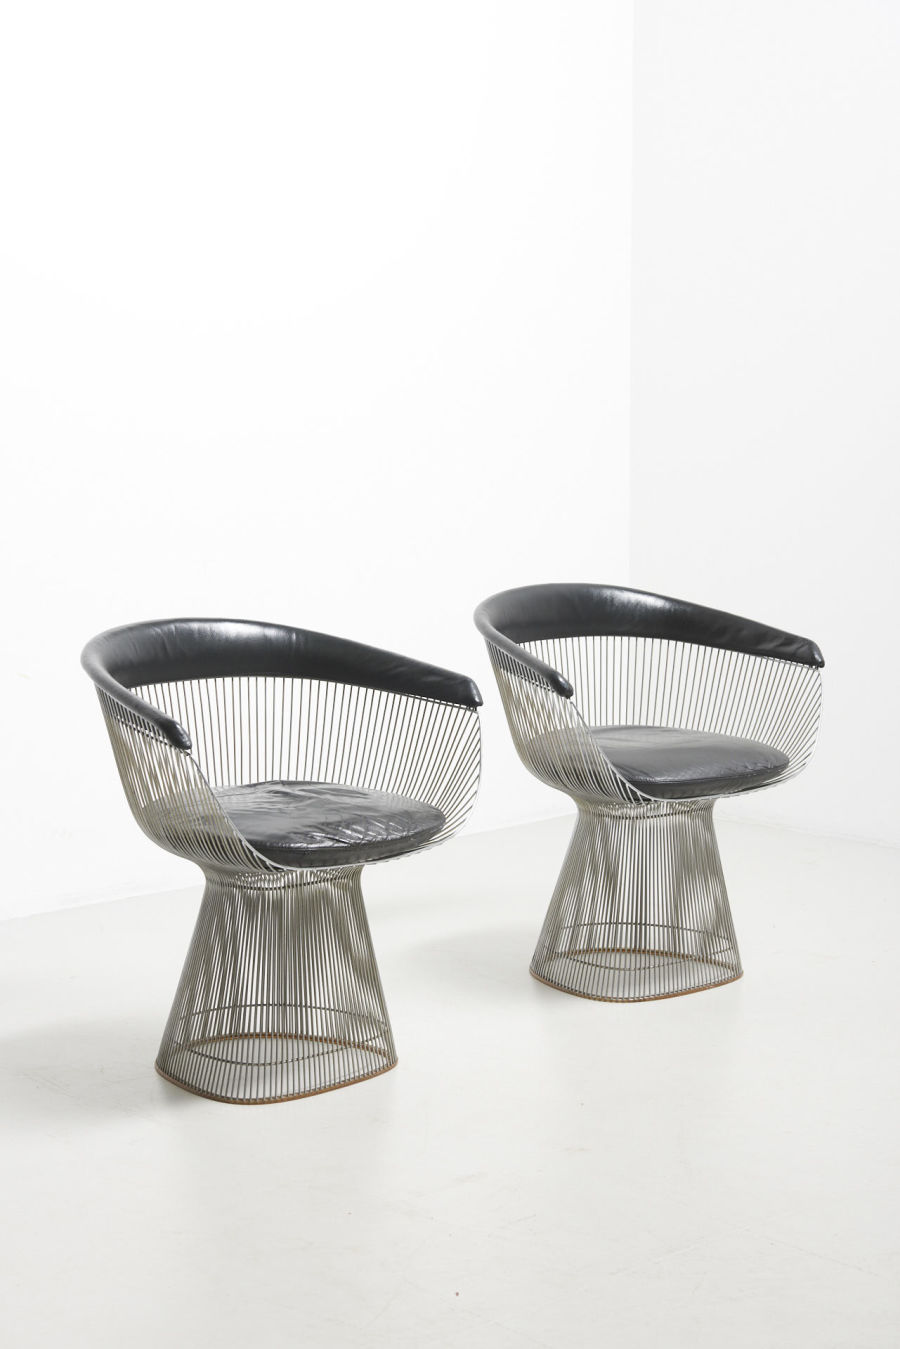 modestfurniture-vintage-2212-warren-platner-chairs-knoll02